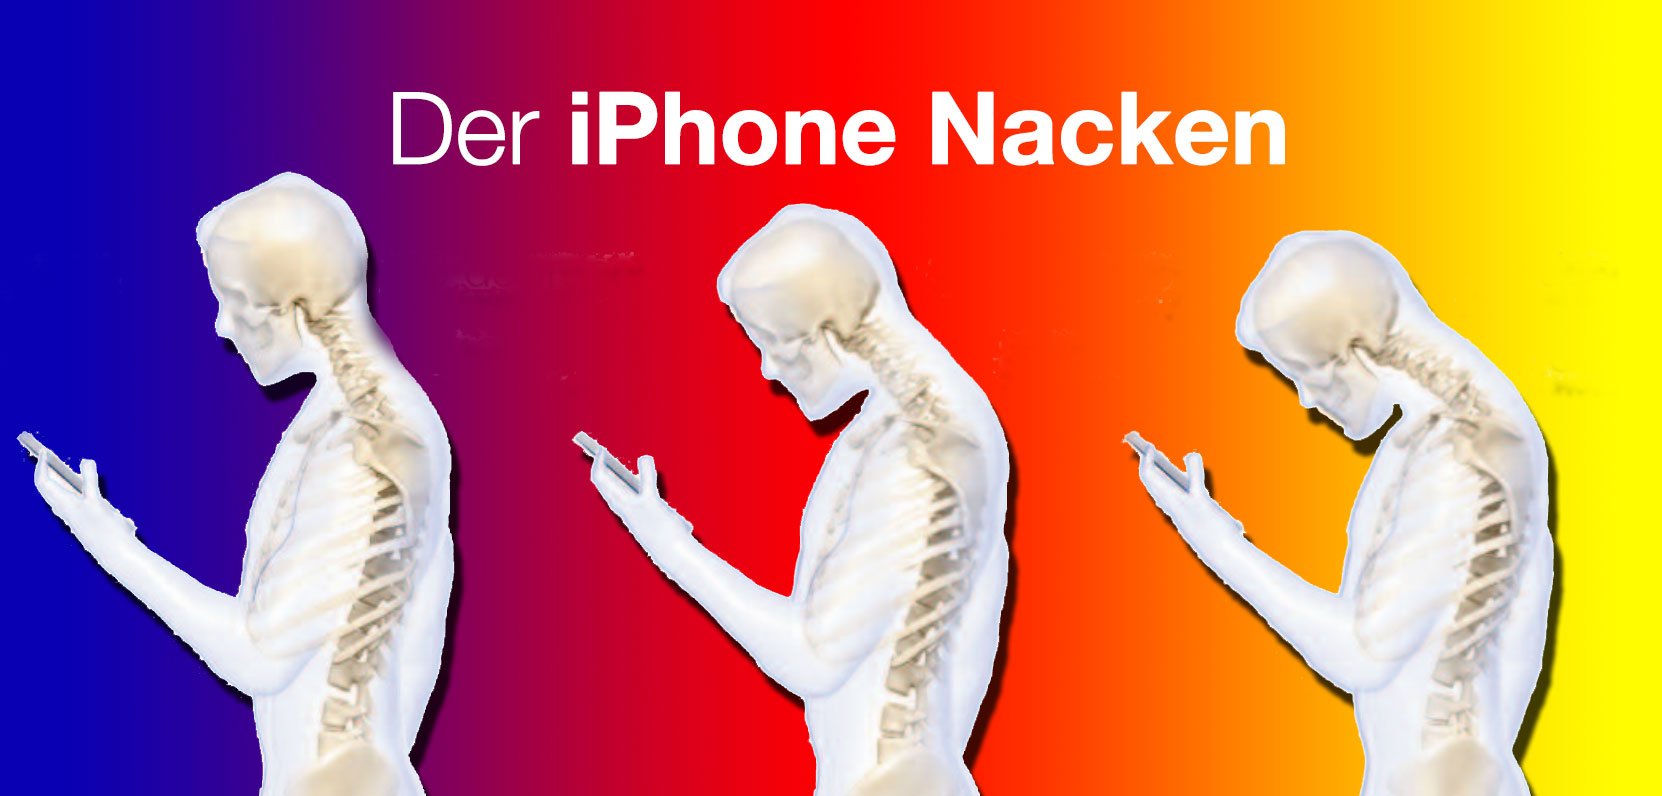 Ärzte warnen vor iPhone Nacken! 1